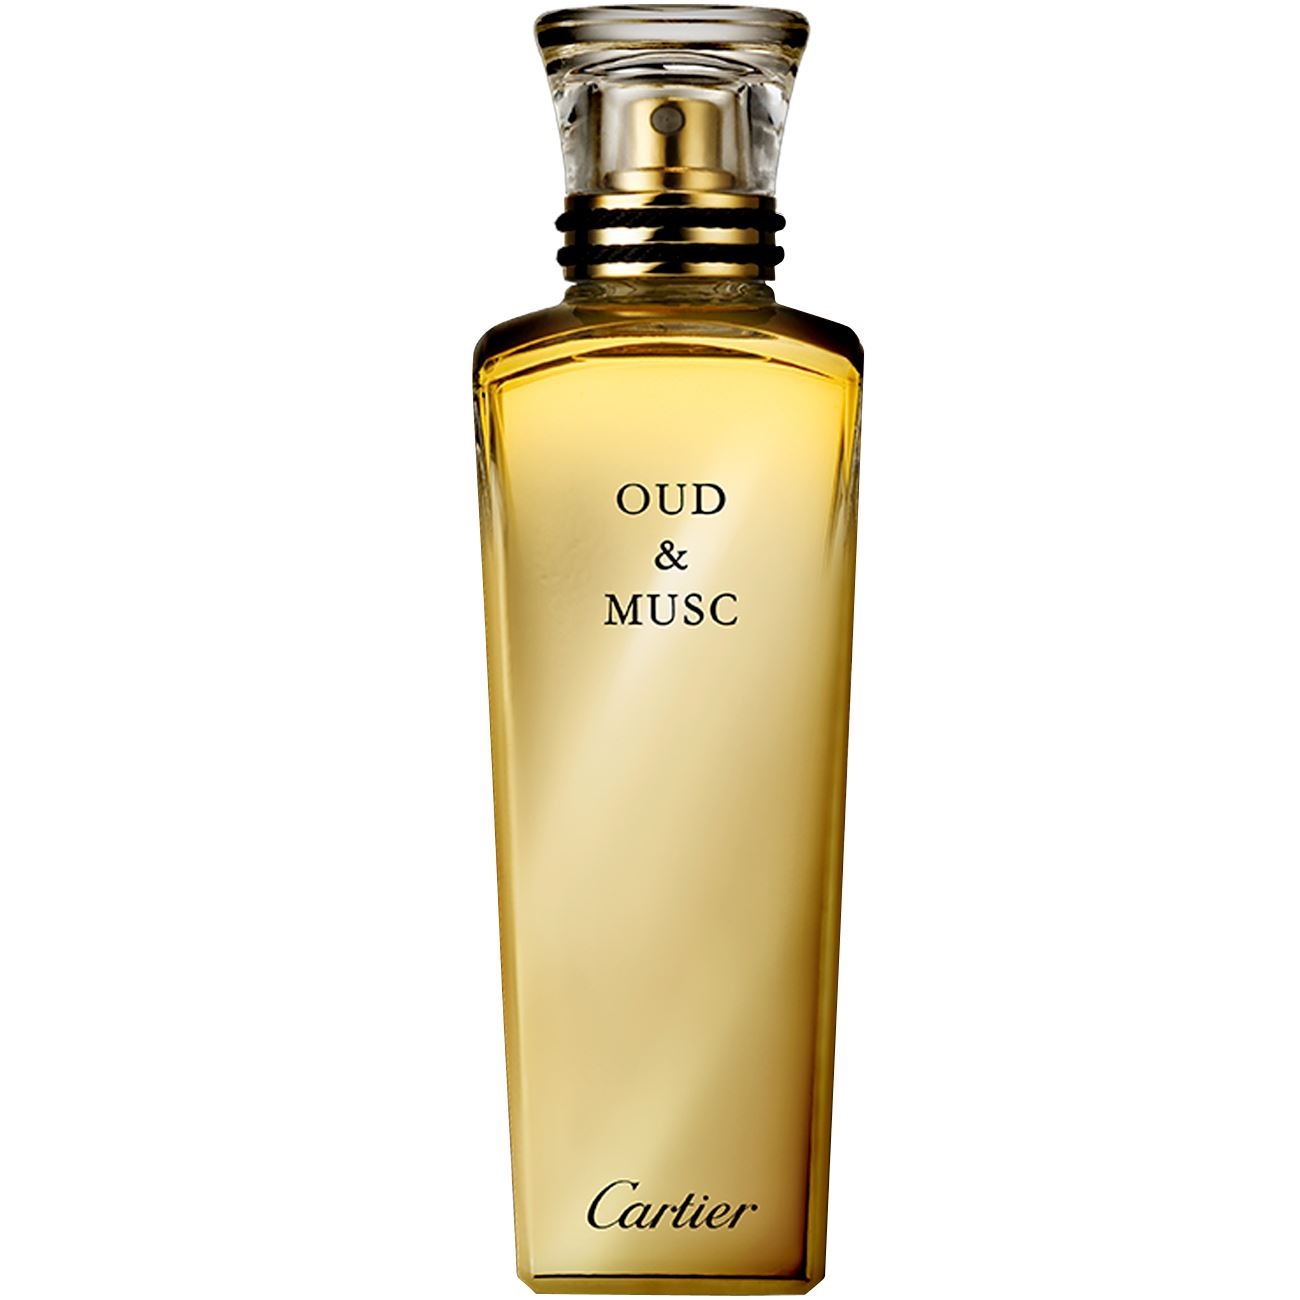 Cartier - Oud & Musc (2мл)